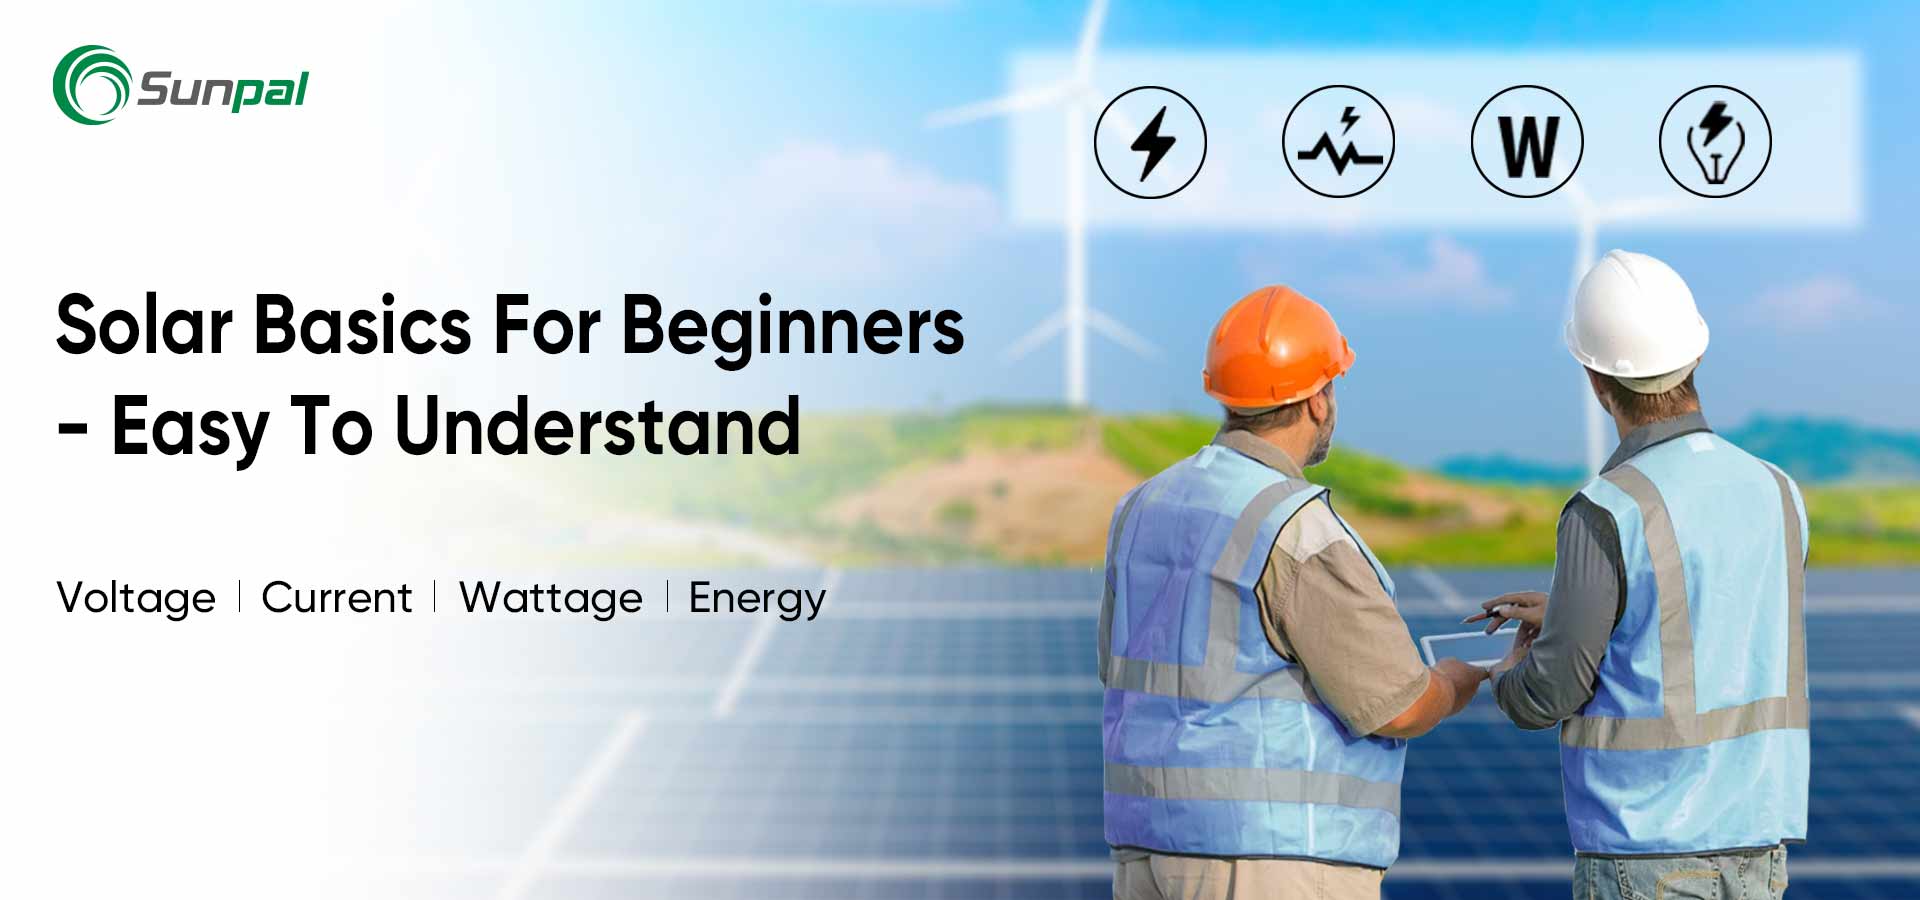 Основи сонячної енергії для новачків: основна напруга/струм/потужність/енергія